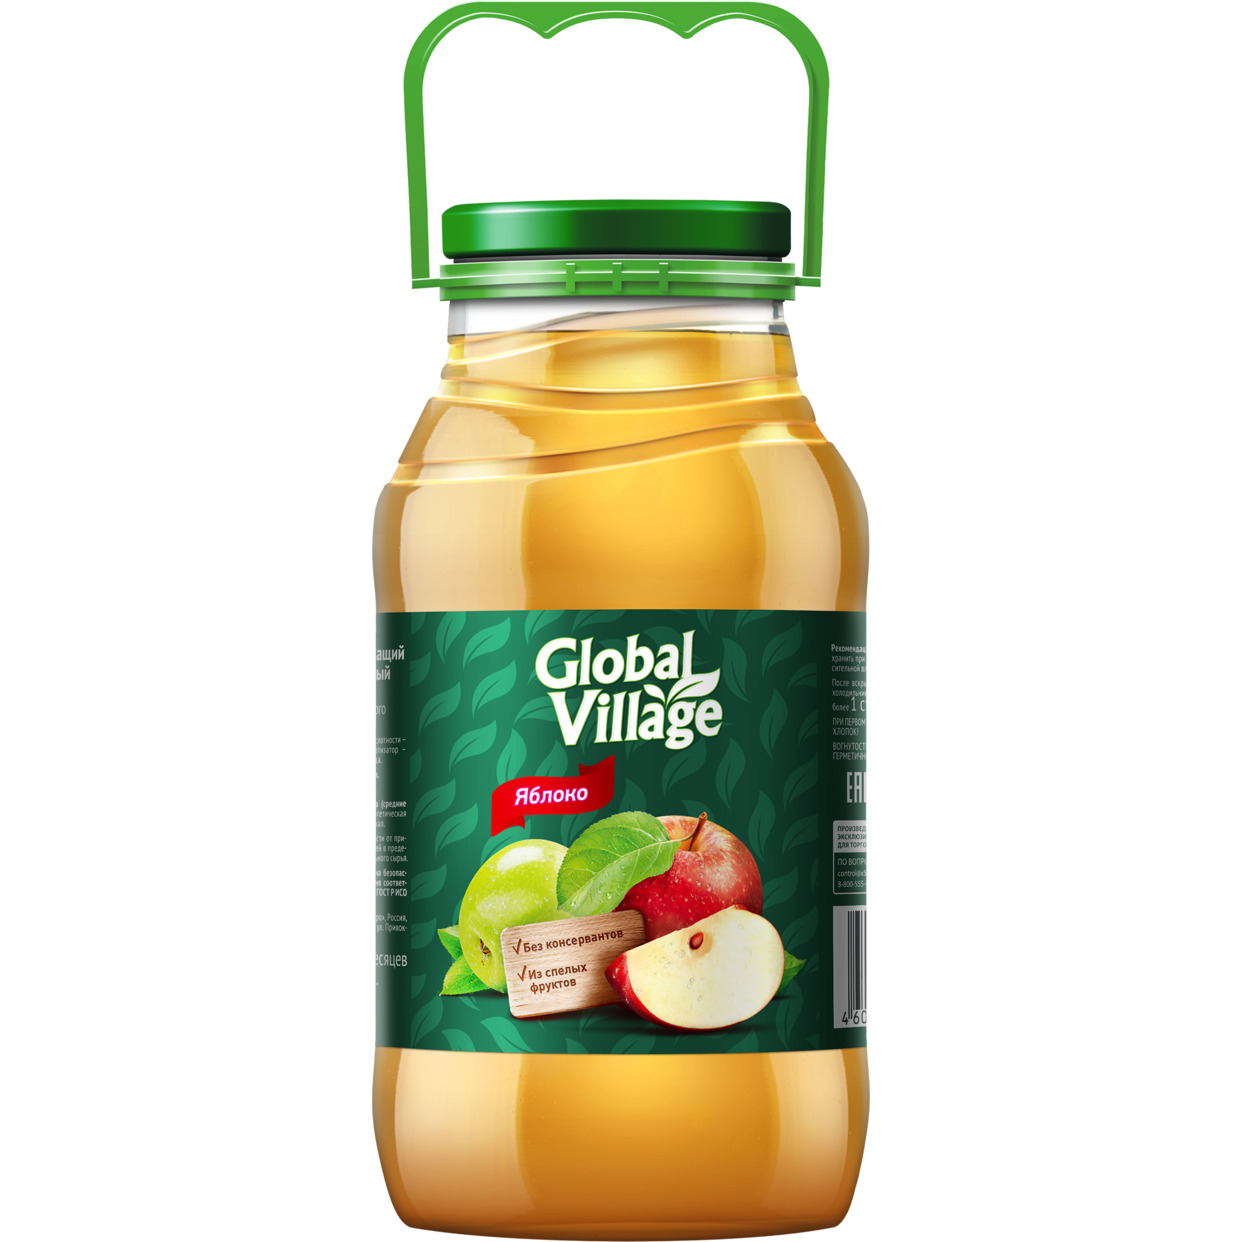 Напиток сокосодержащий яблочный осветленный для детского питания детей дошкольного и школьного возраста от 3-х лет и старше, Global Village, 1.8 л по акции в Пятерочке